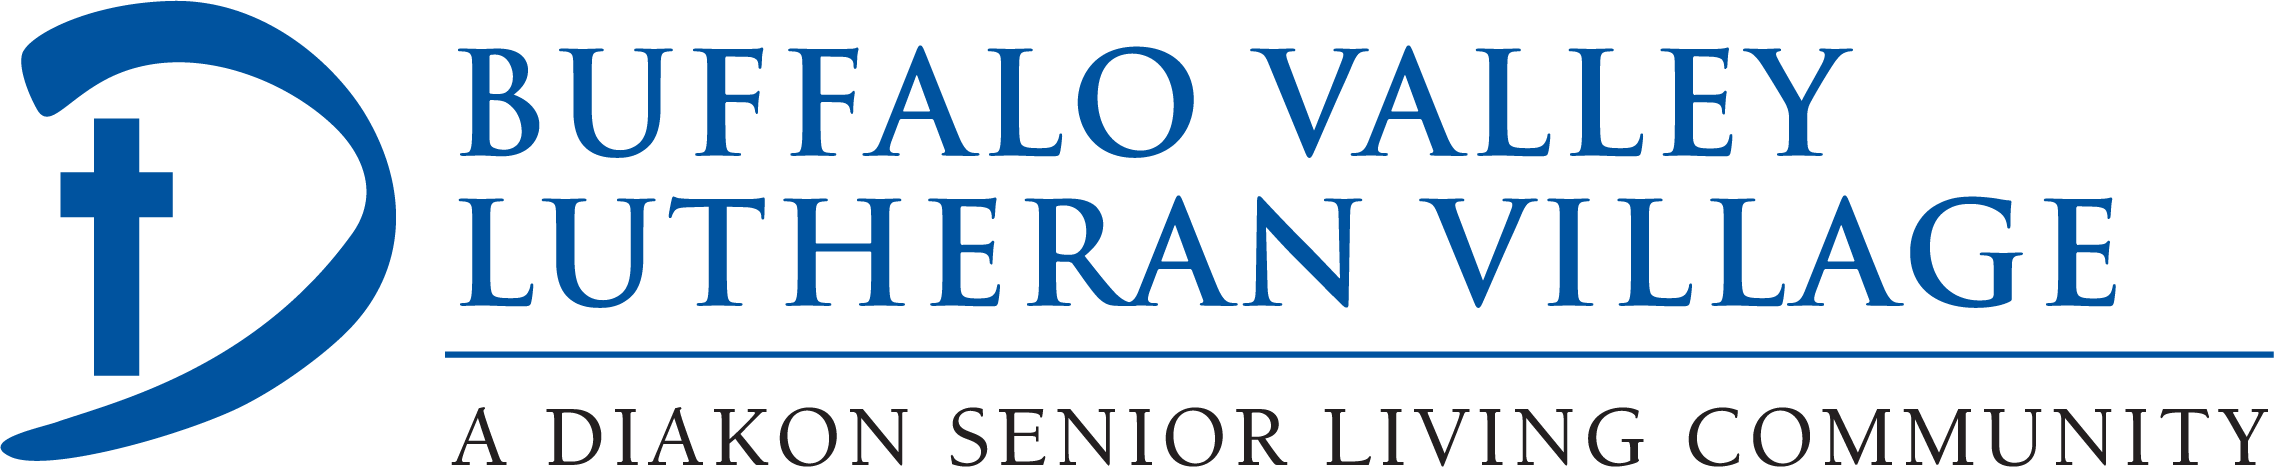 Buffalo Valley Logo